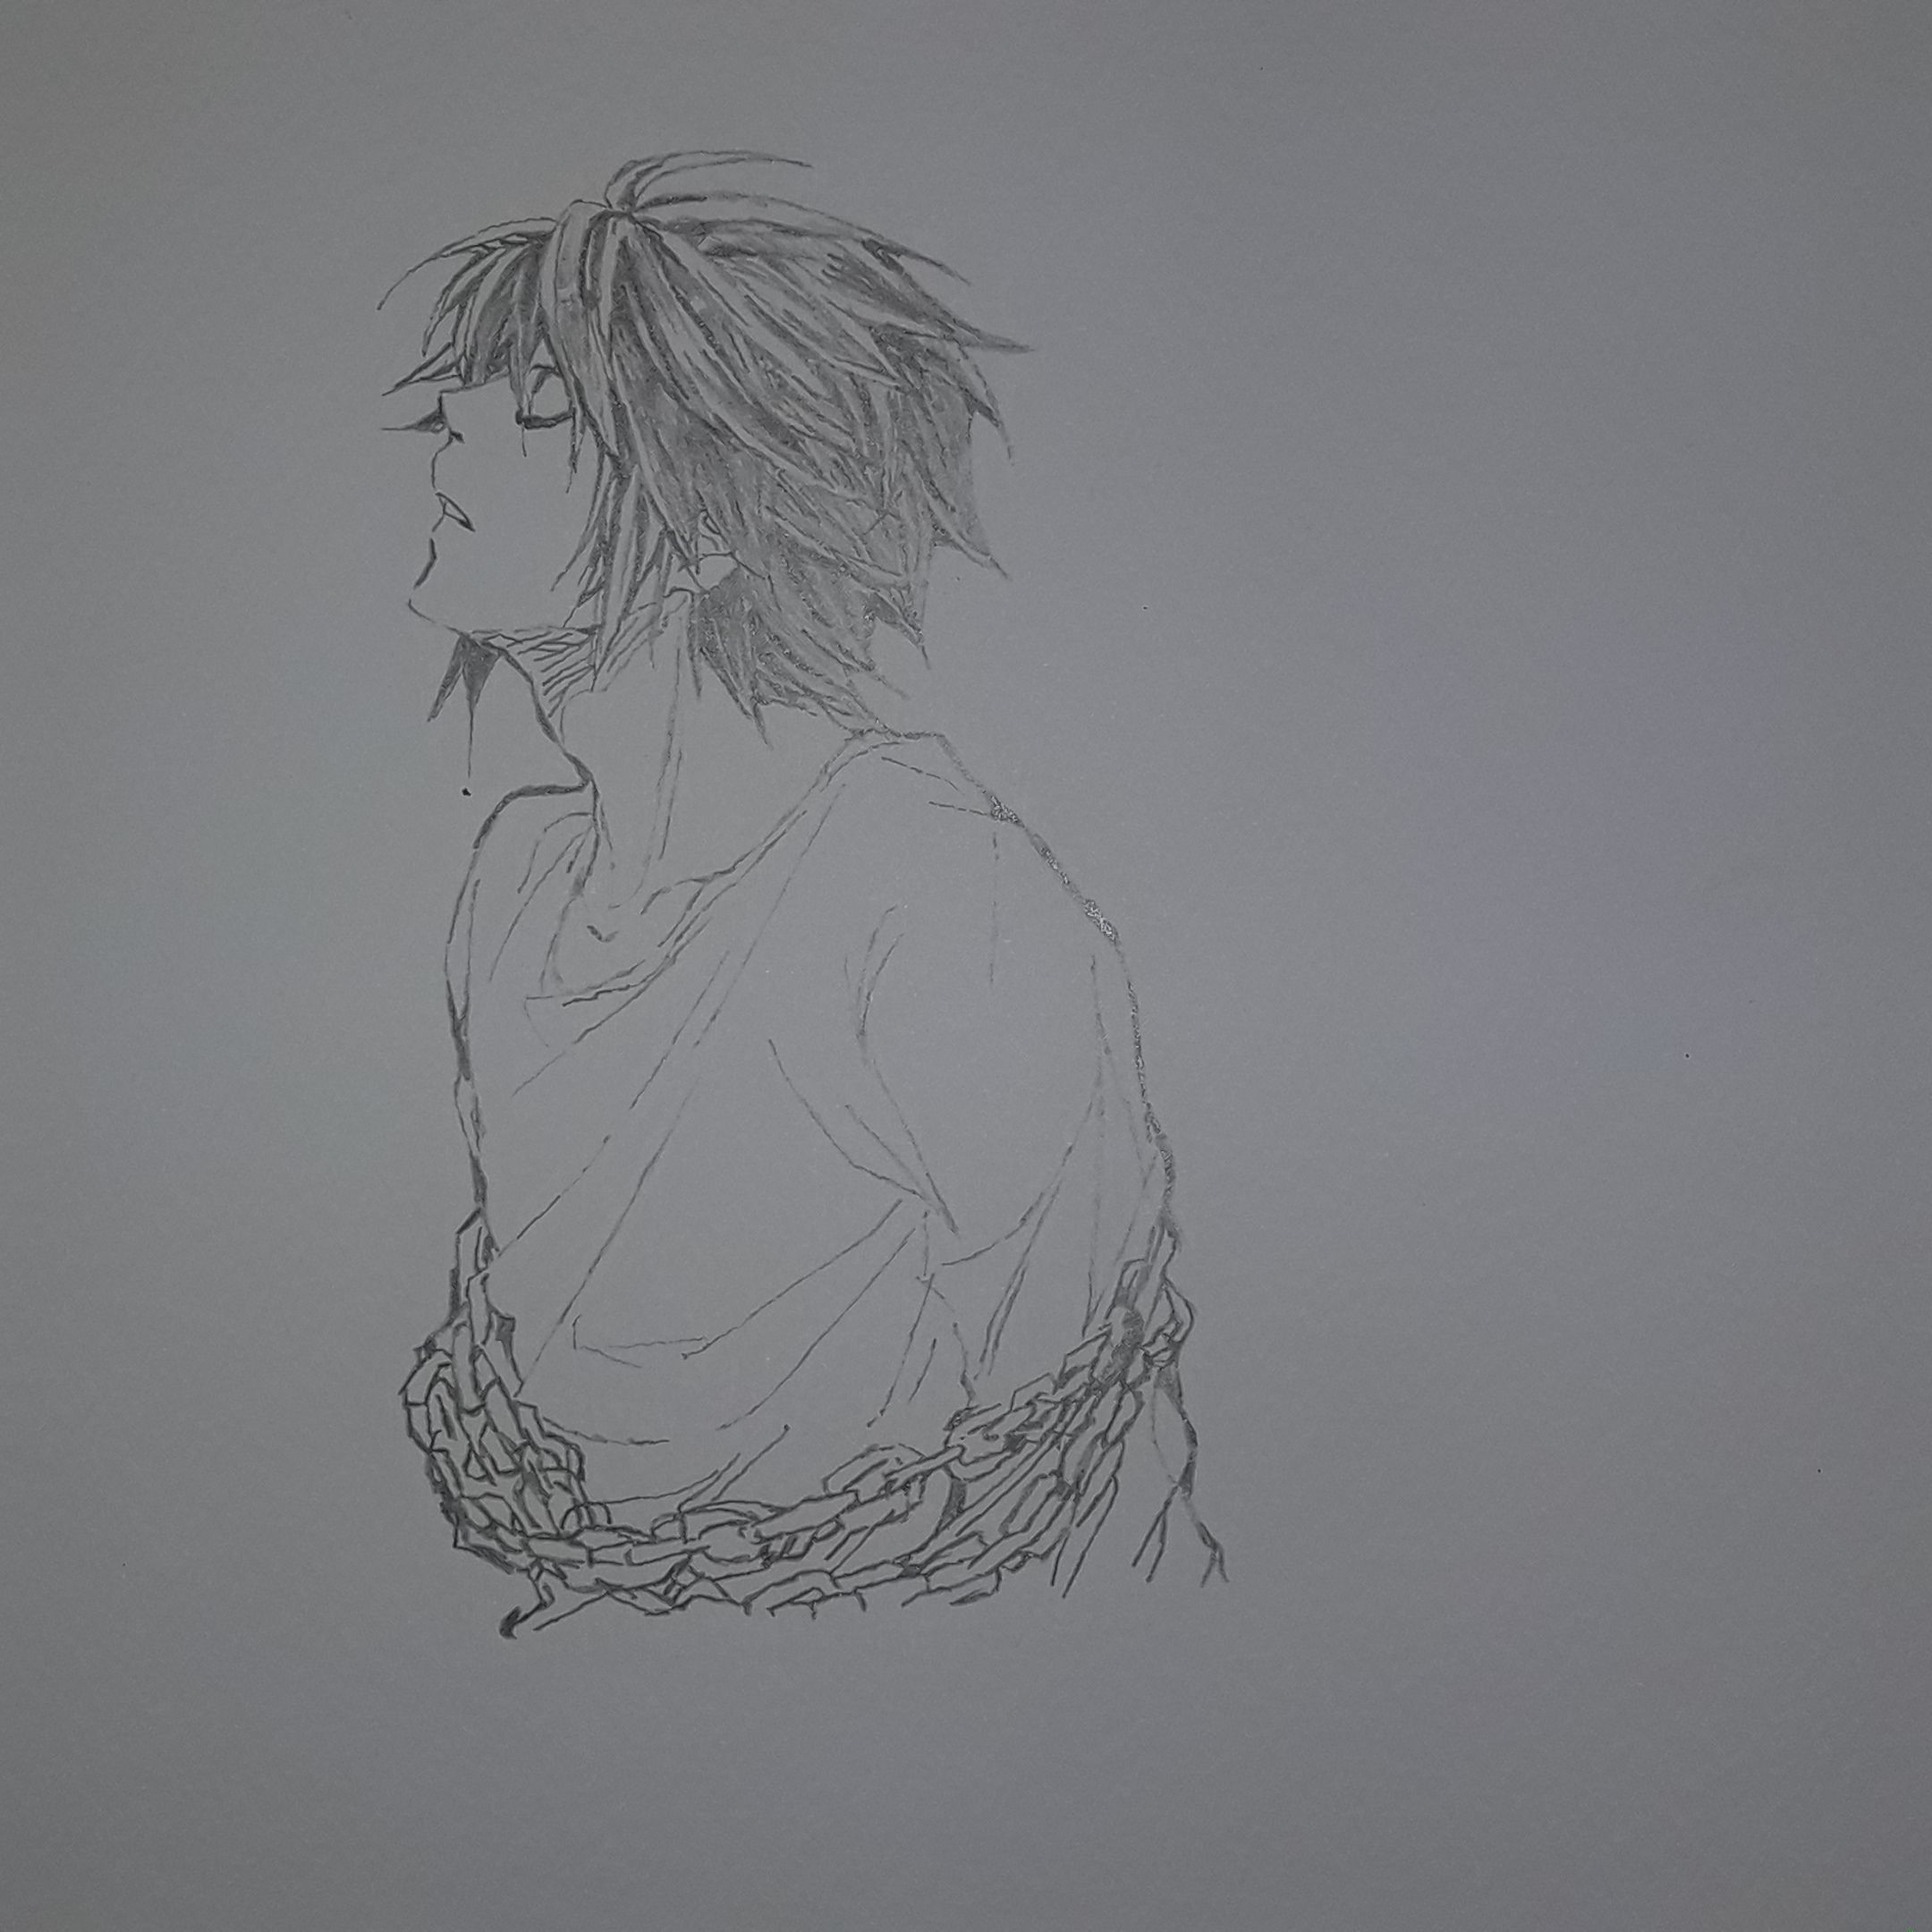 L, Death Note by RalysonB on DeviantArt